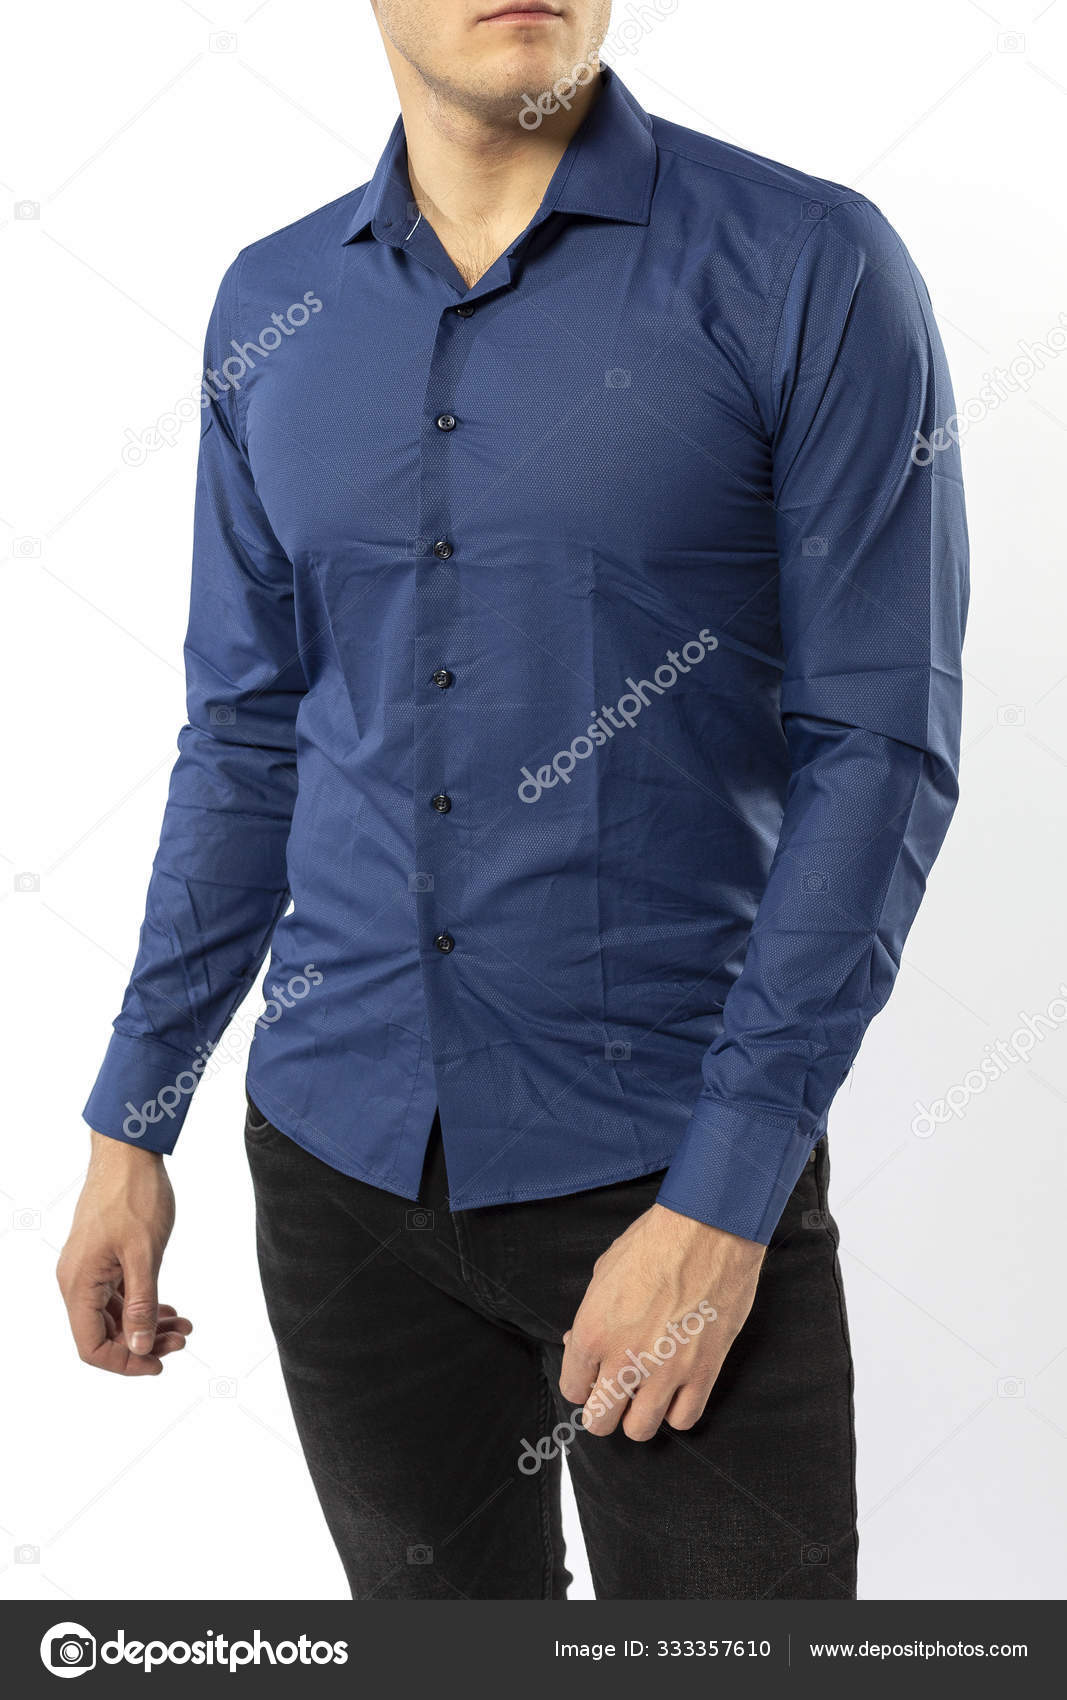 dark blue shirt with dark blue jeans